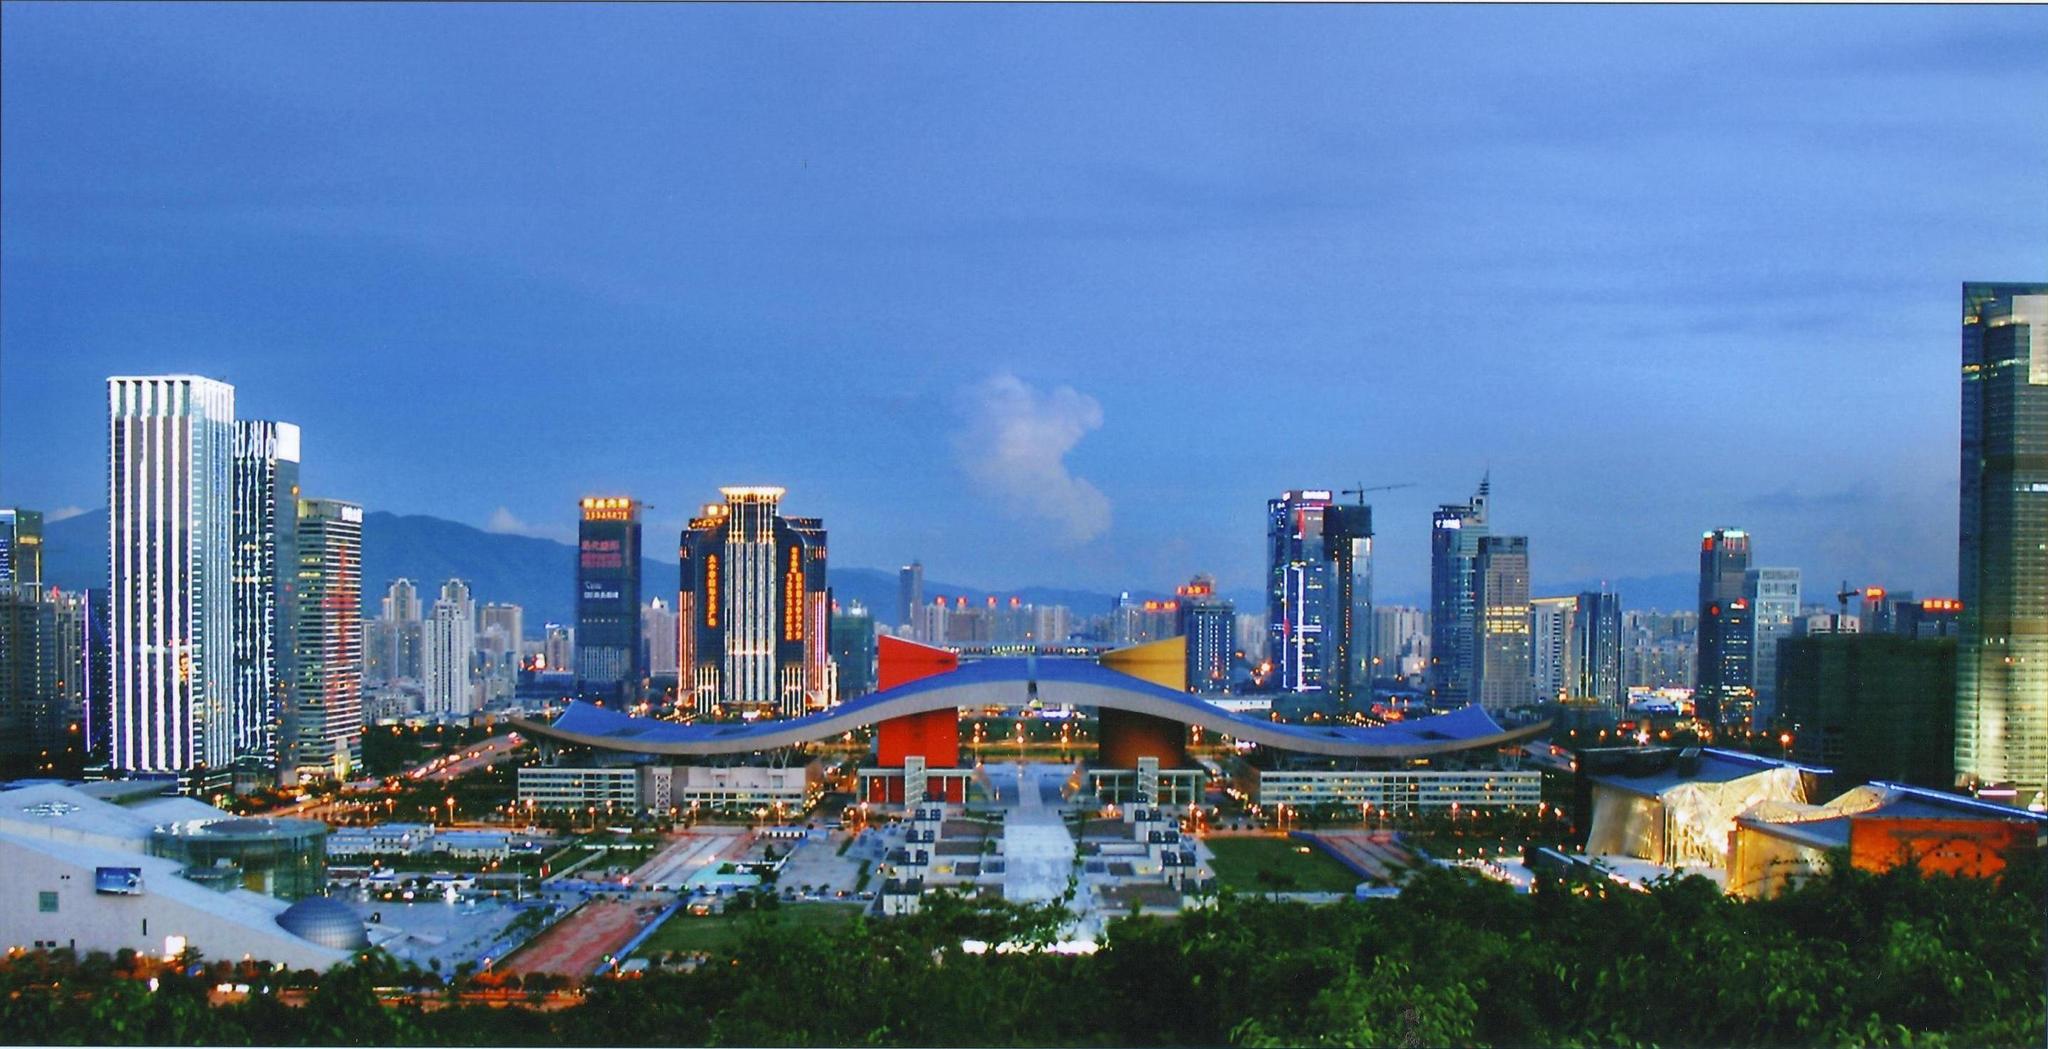 深圳面积1997平方公里,香港1997年回归,是巧合